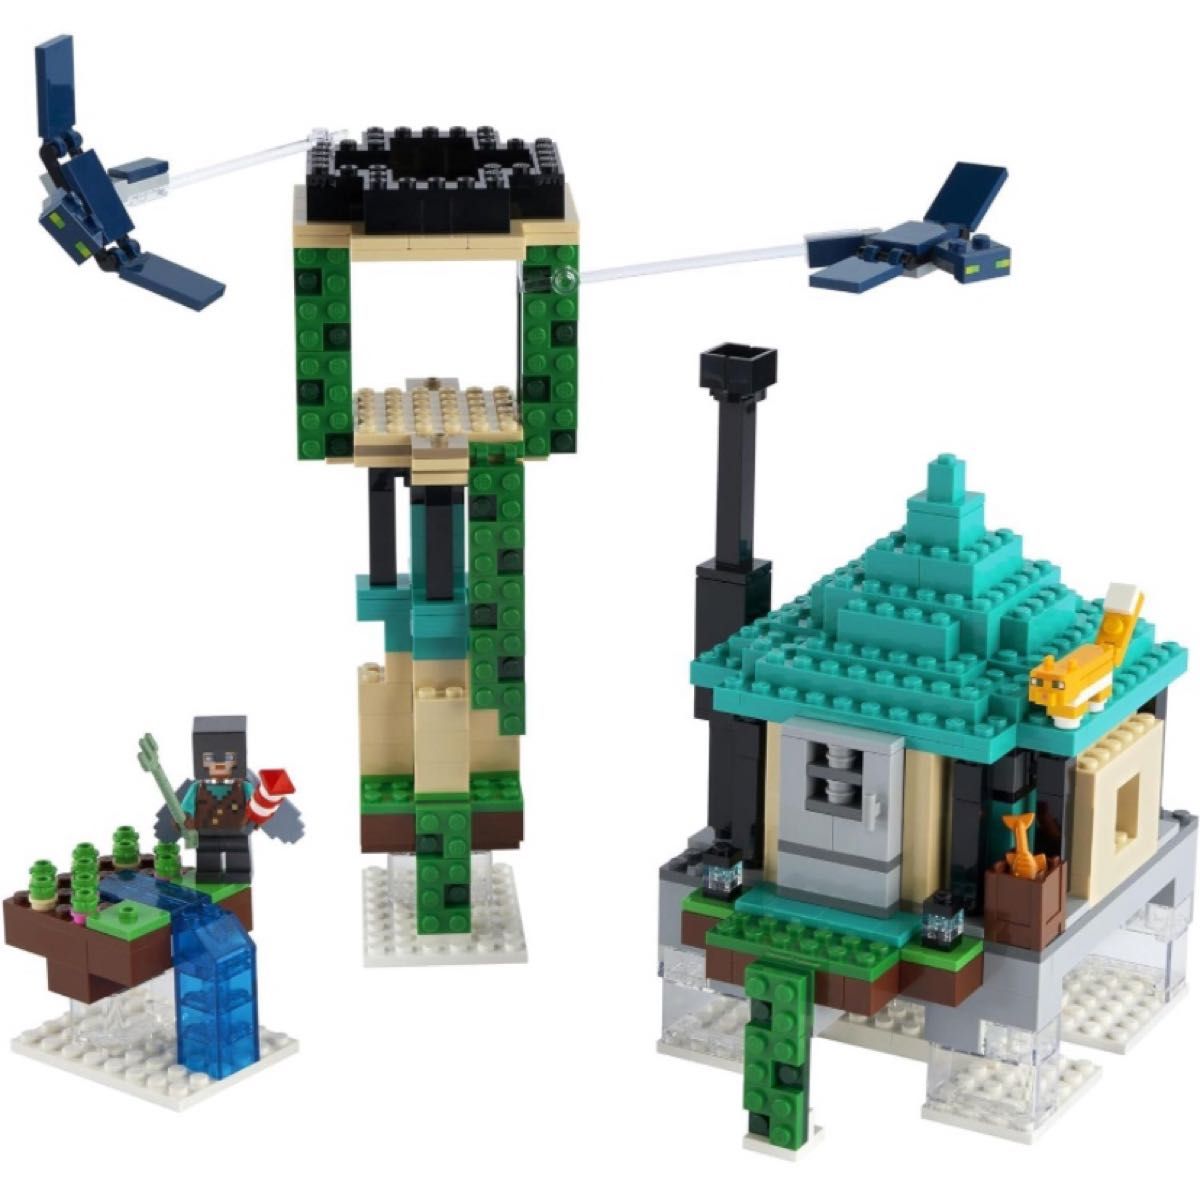 レゴ LEGO マインクラフト MINECRAFT そびえる塔 21173